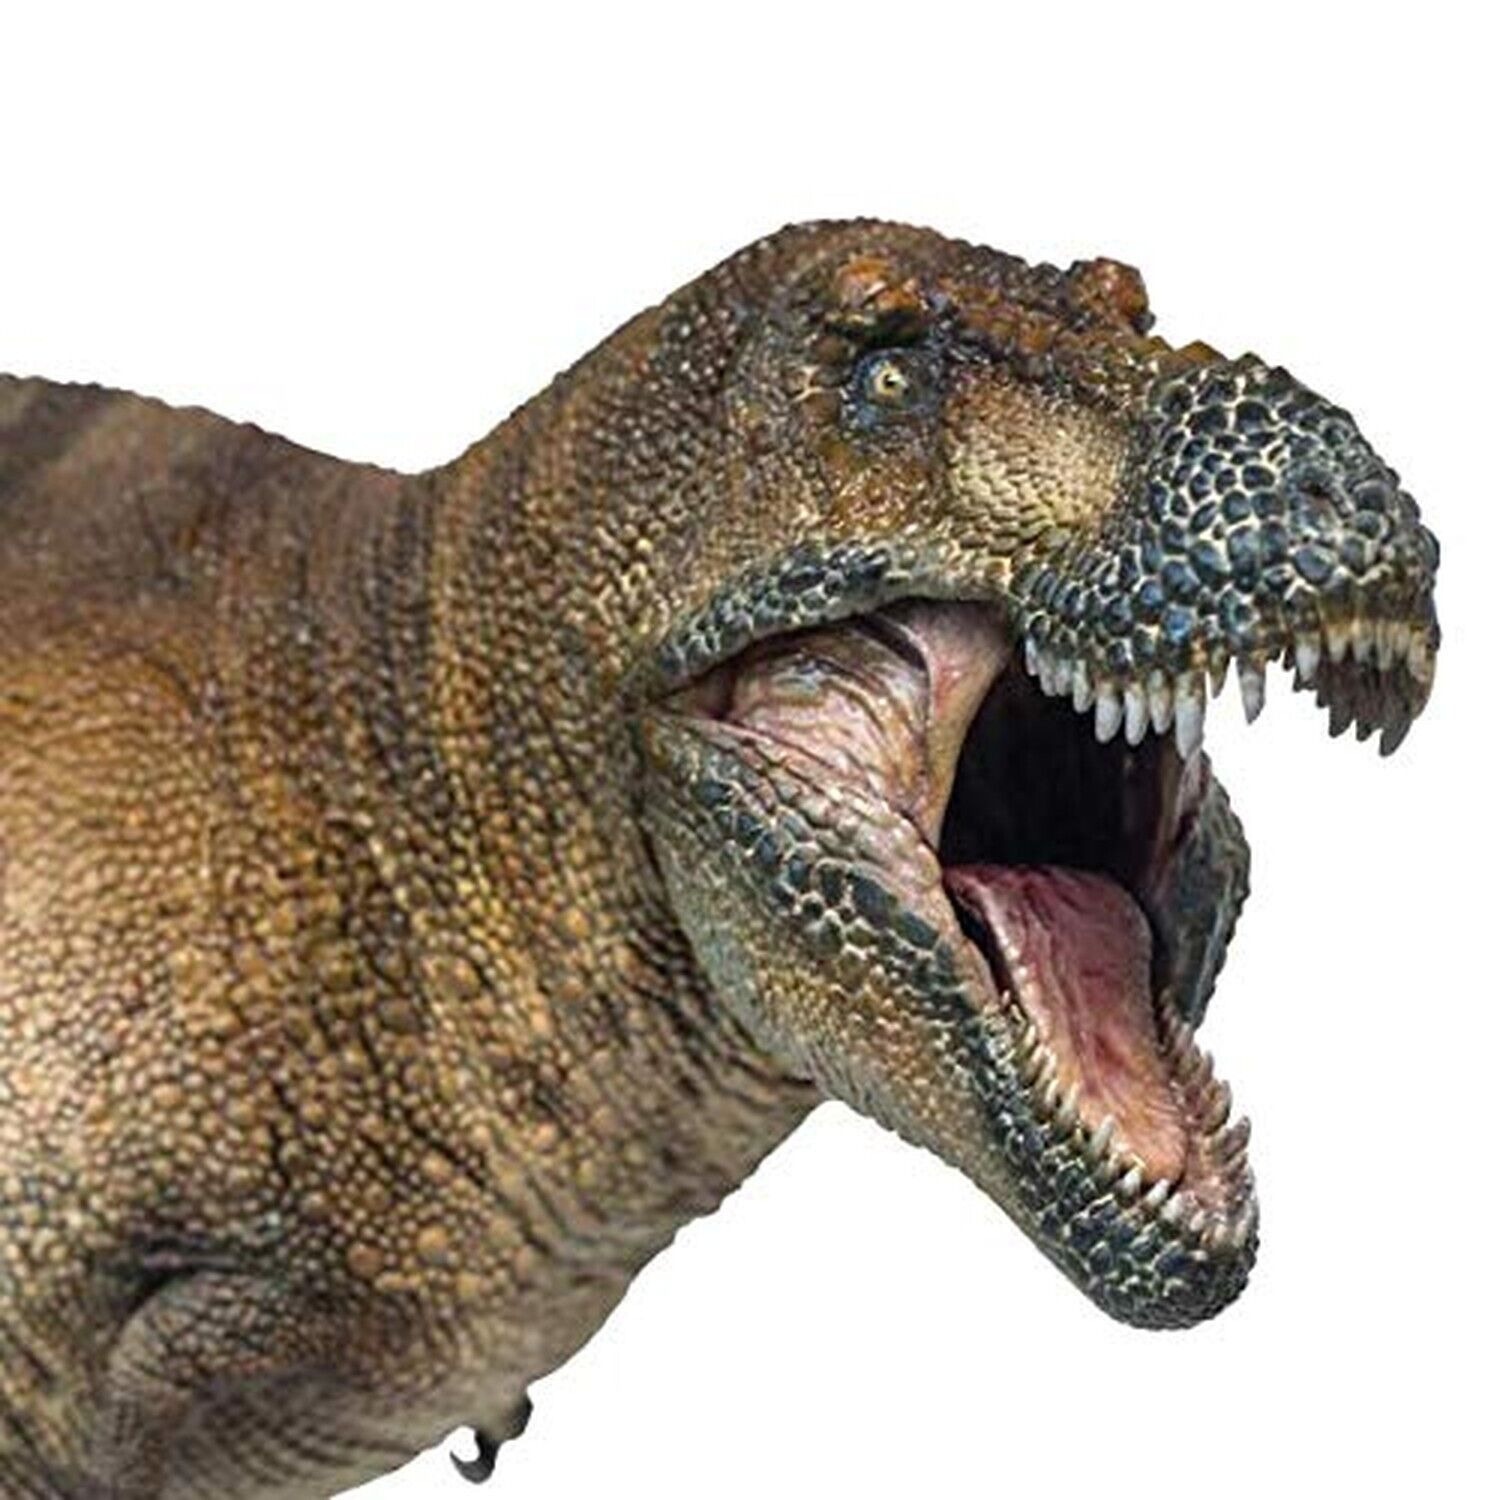 PNSO Dinosaur Museums Series (New Wilson the Tyrannosaurus Rex 1:35 Scientifi...